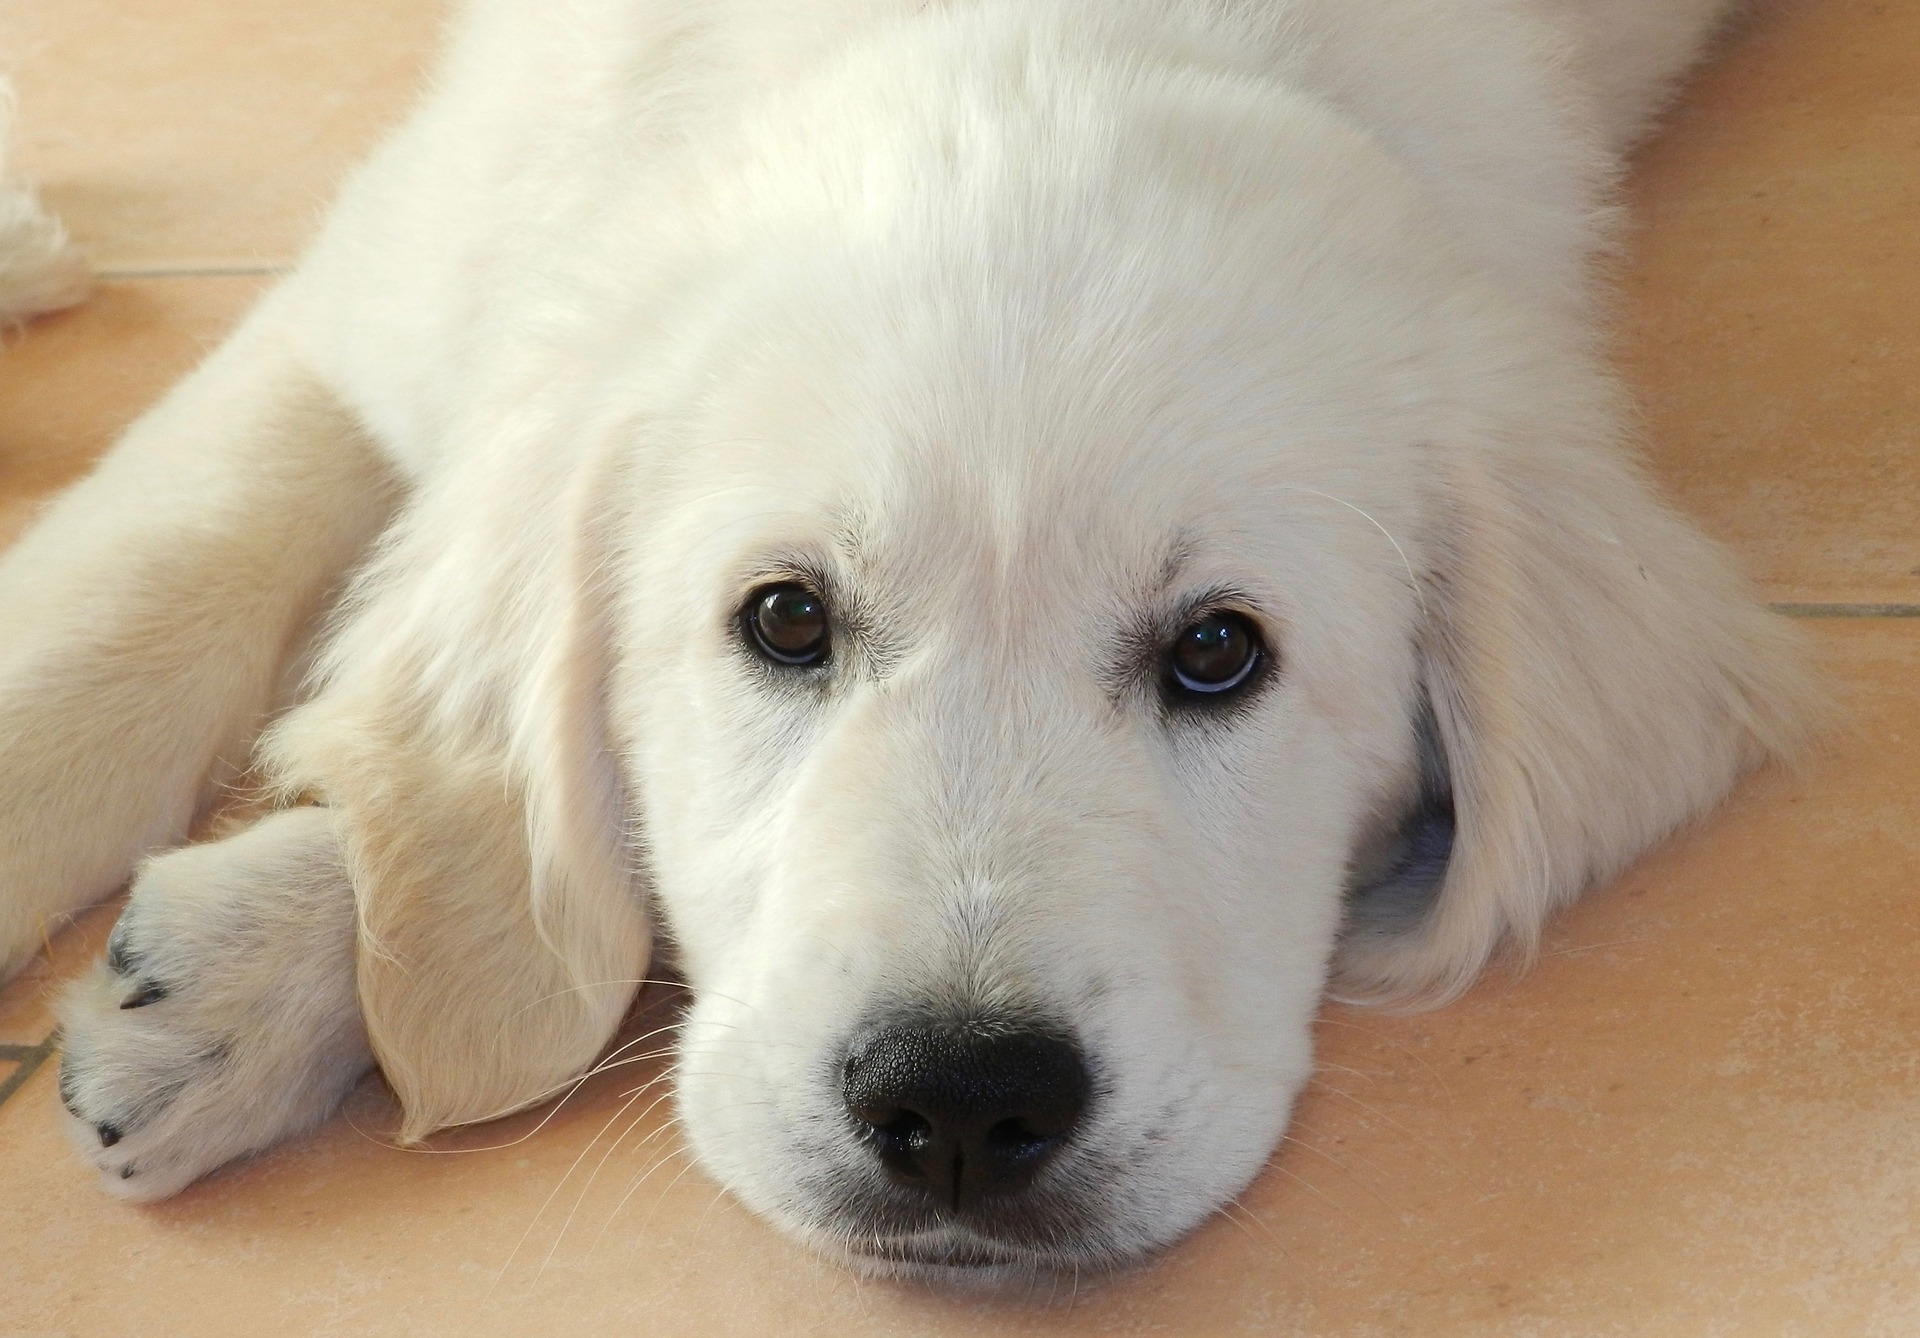 Bộ ảnh "Hình ảnh chó Golden Retriever" hiền lành, dễ thương 15